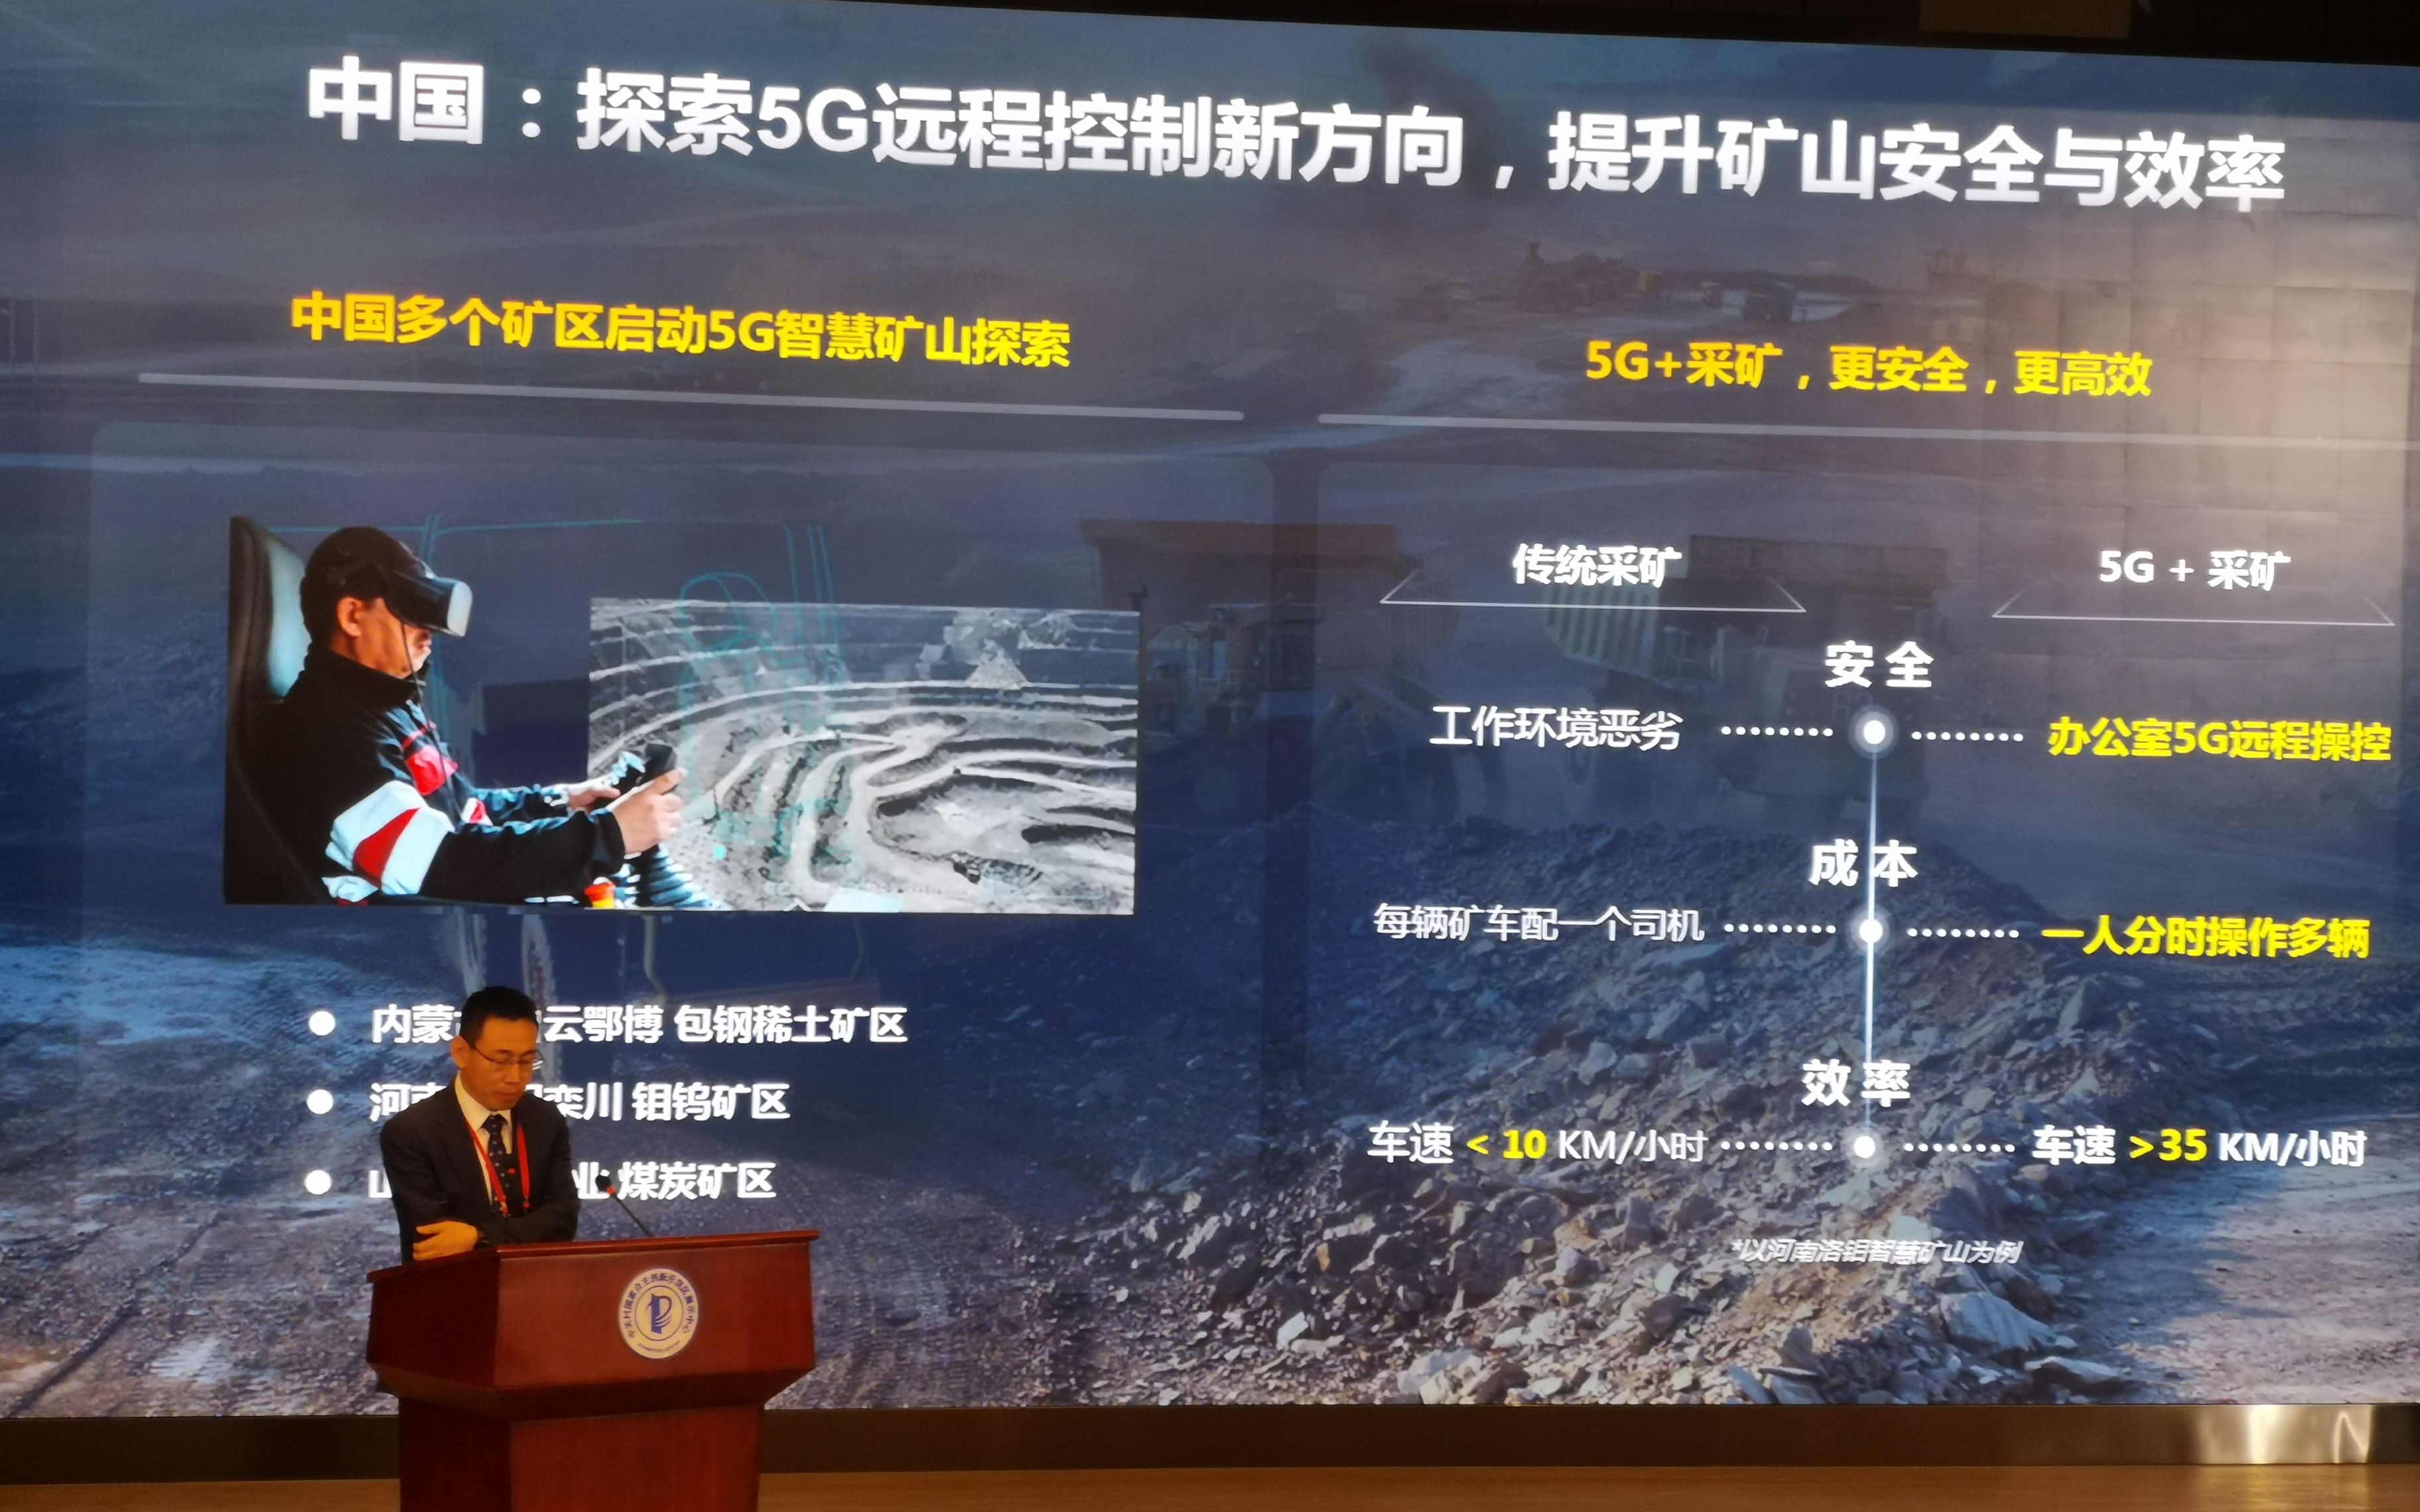 北京大兴国际机场安装5G基站超3000个